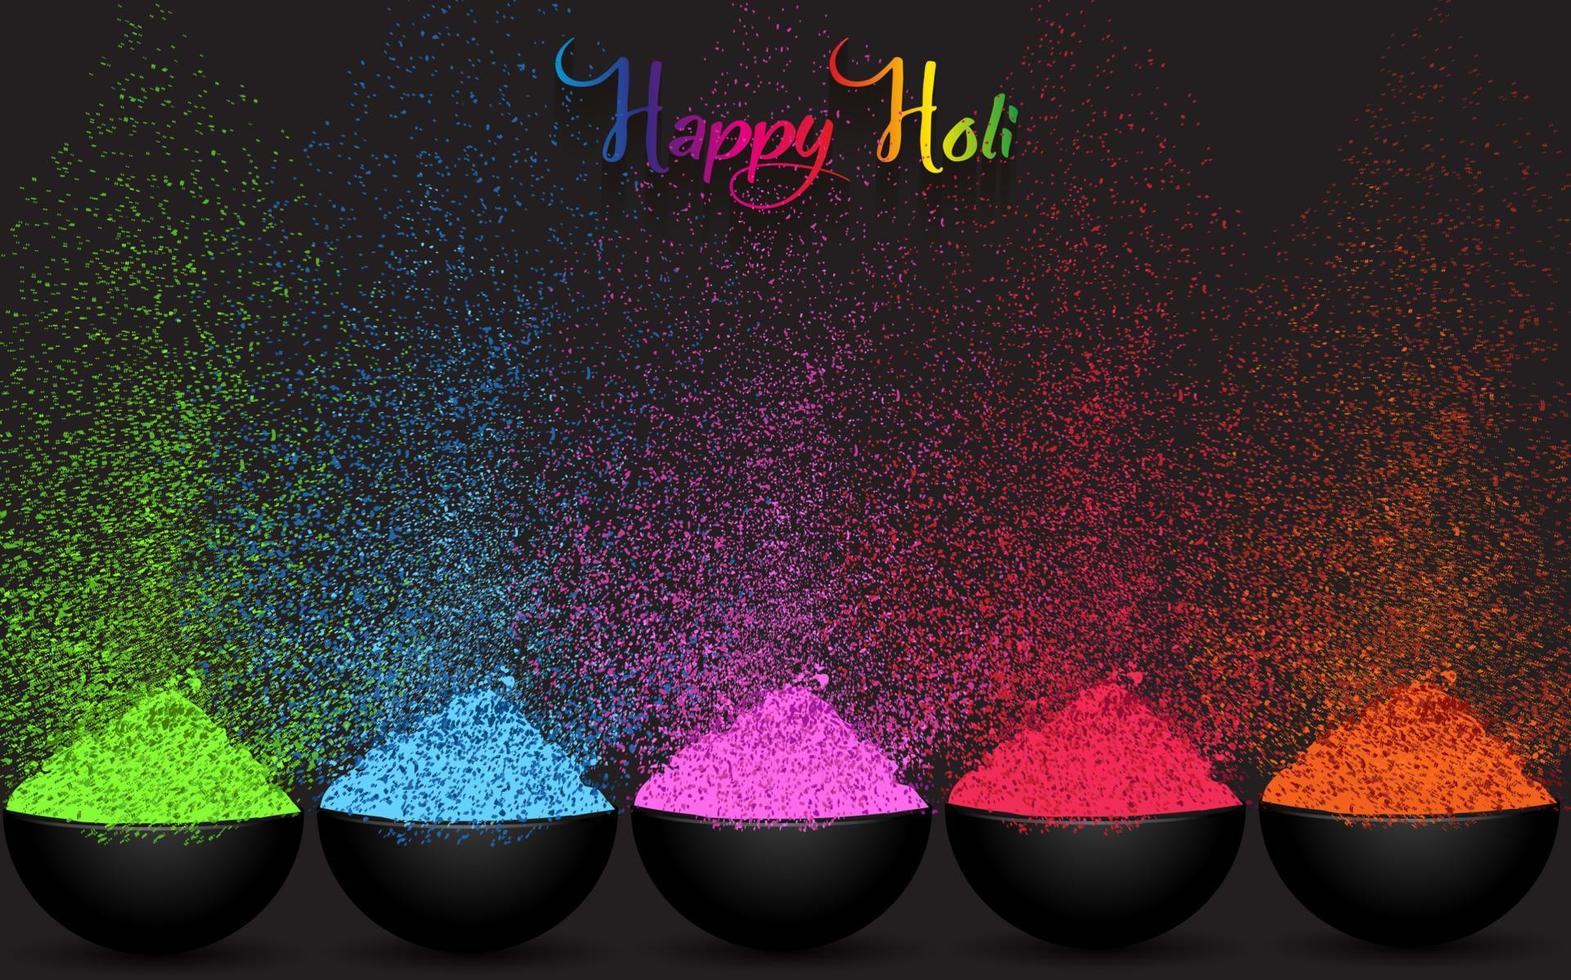 färgglad gulaal, pulverfärg, indisk festival för glad holi-kort med färgglada explosionsmönstrade och kristaller på papper svart färgbakgrund, vektorillustrationsbannermall vektor